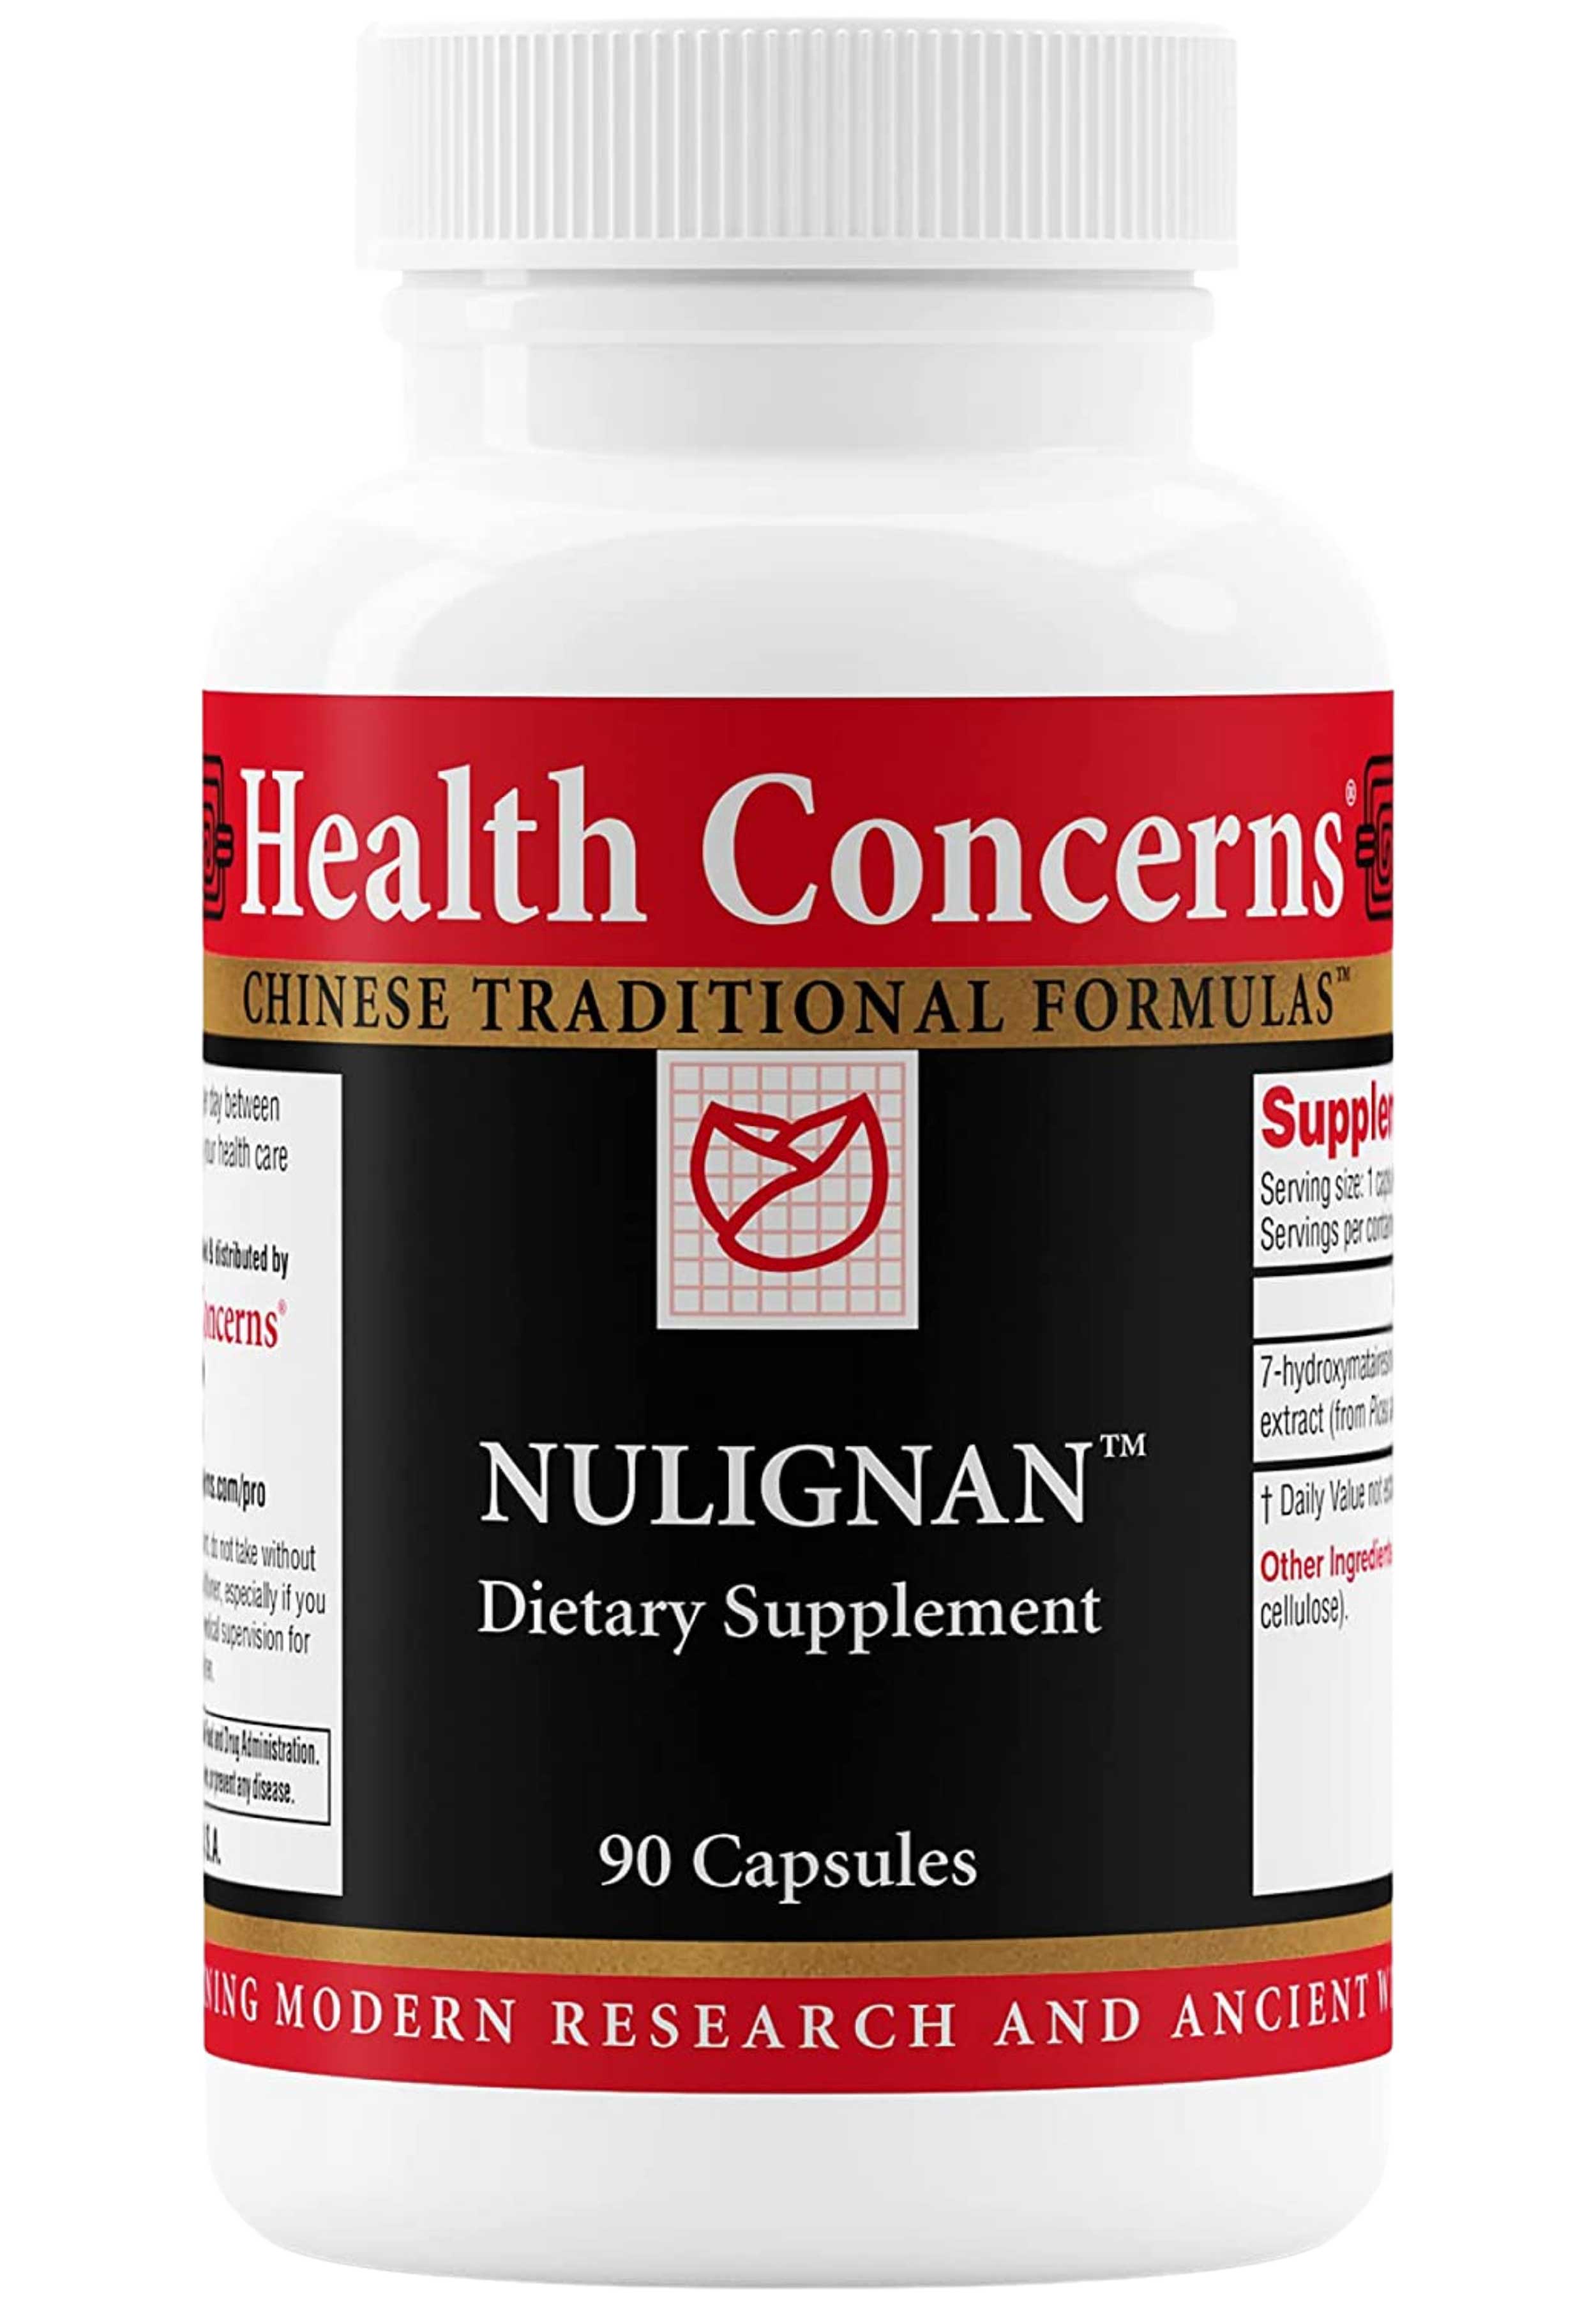 Health Concerns NuLignan